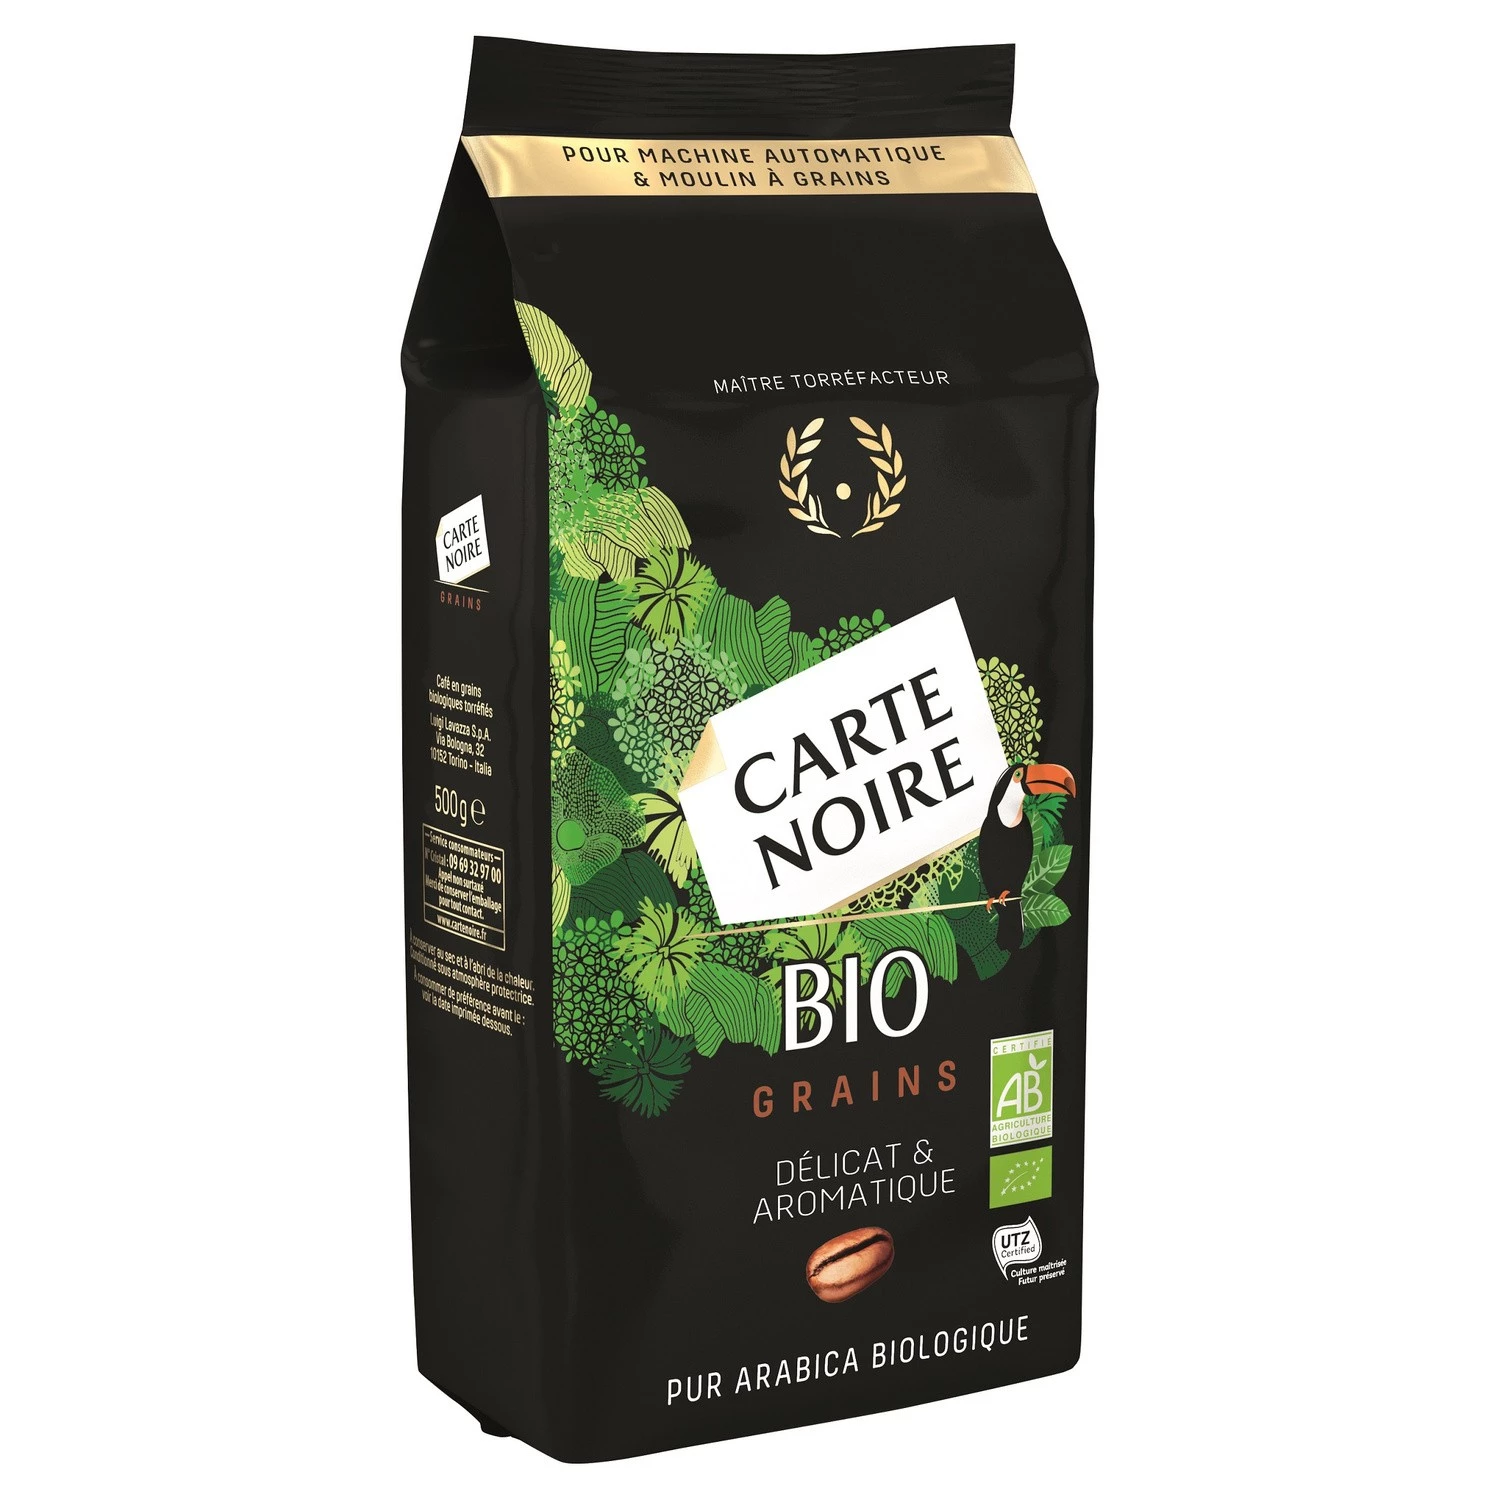 Caffè biologico delicato e aromatico in grani 500g - CARTE NOIRE